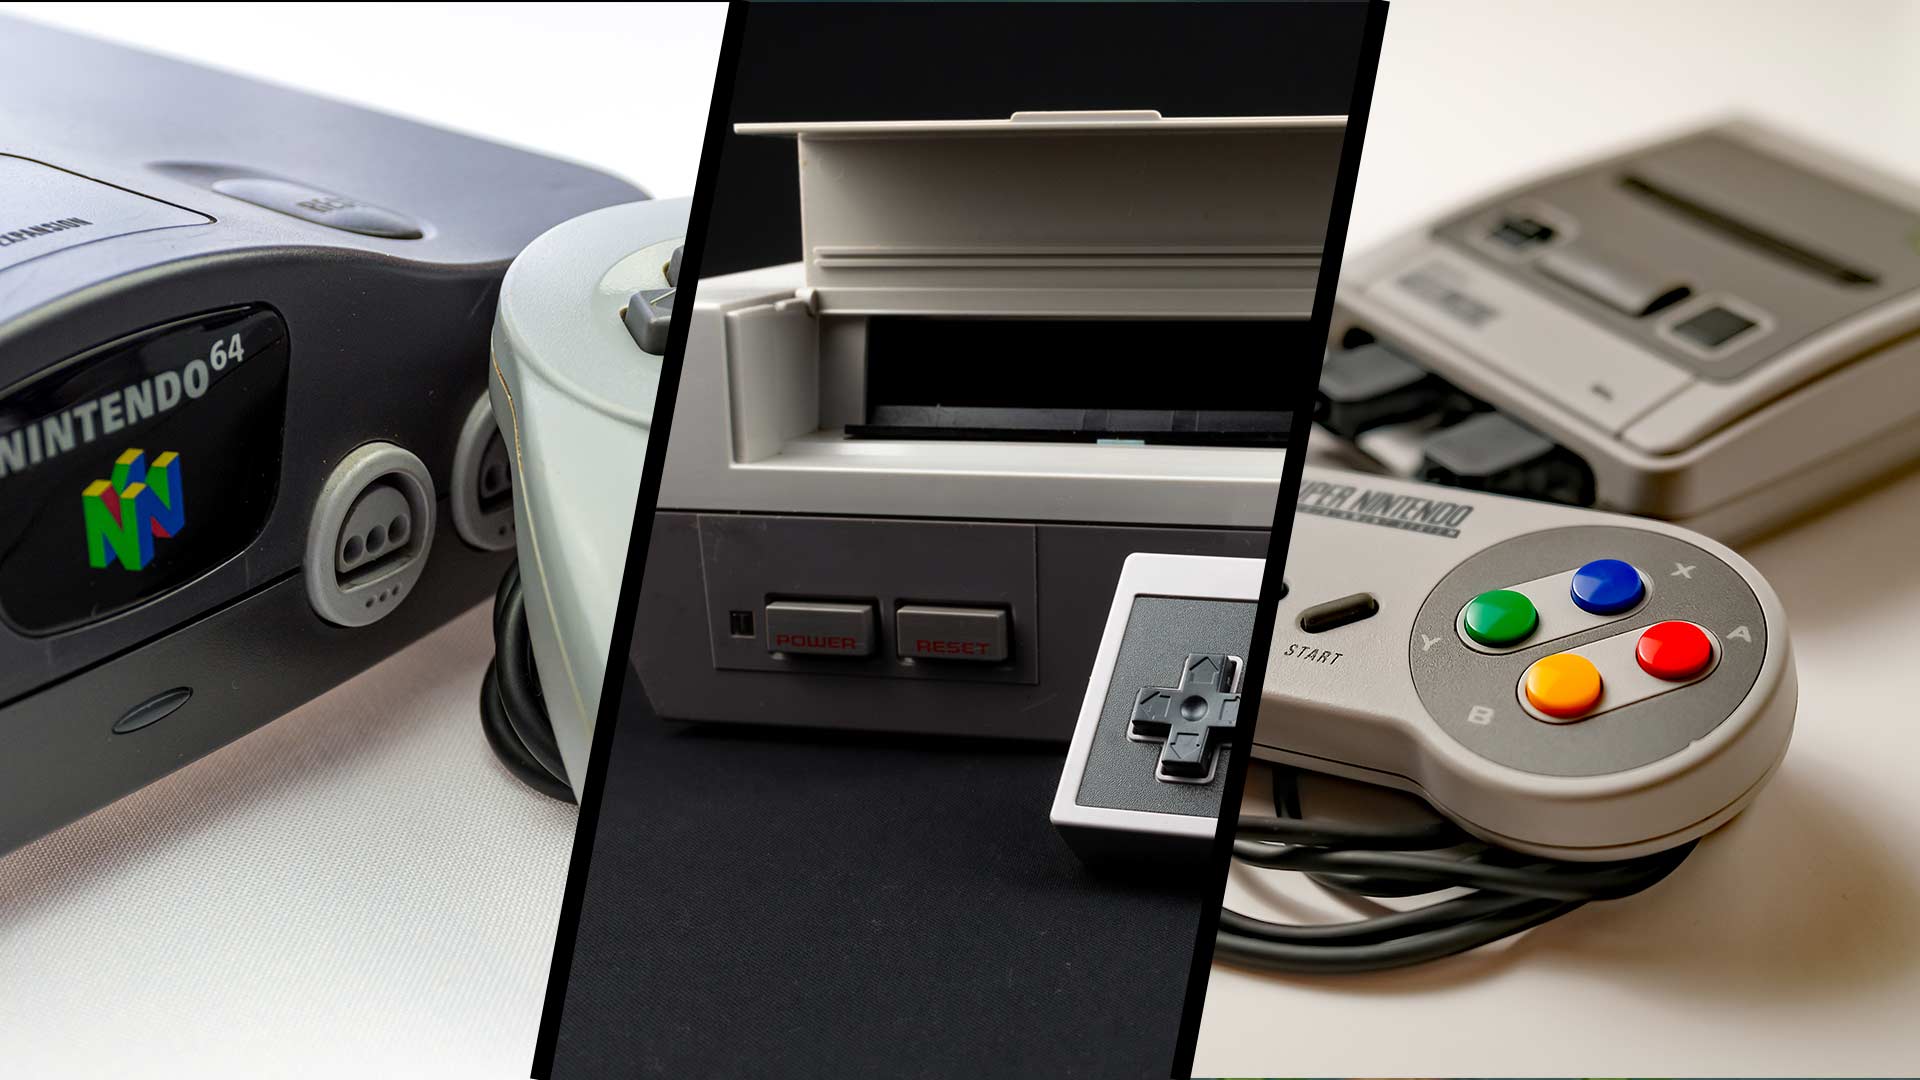 NES, SNES, Nintendo 64: Das haben die Konsolen ursprünglich gekostet